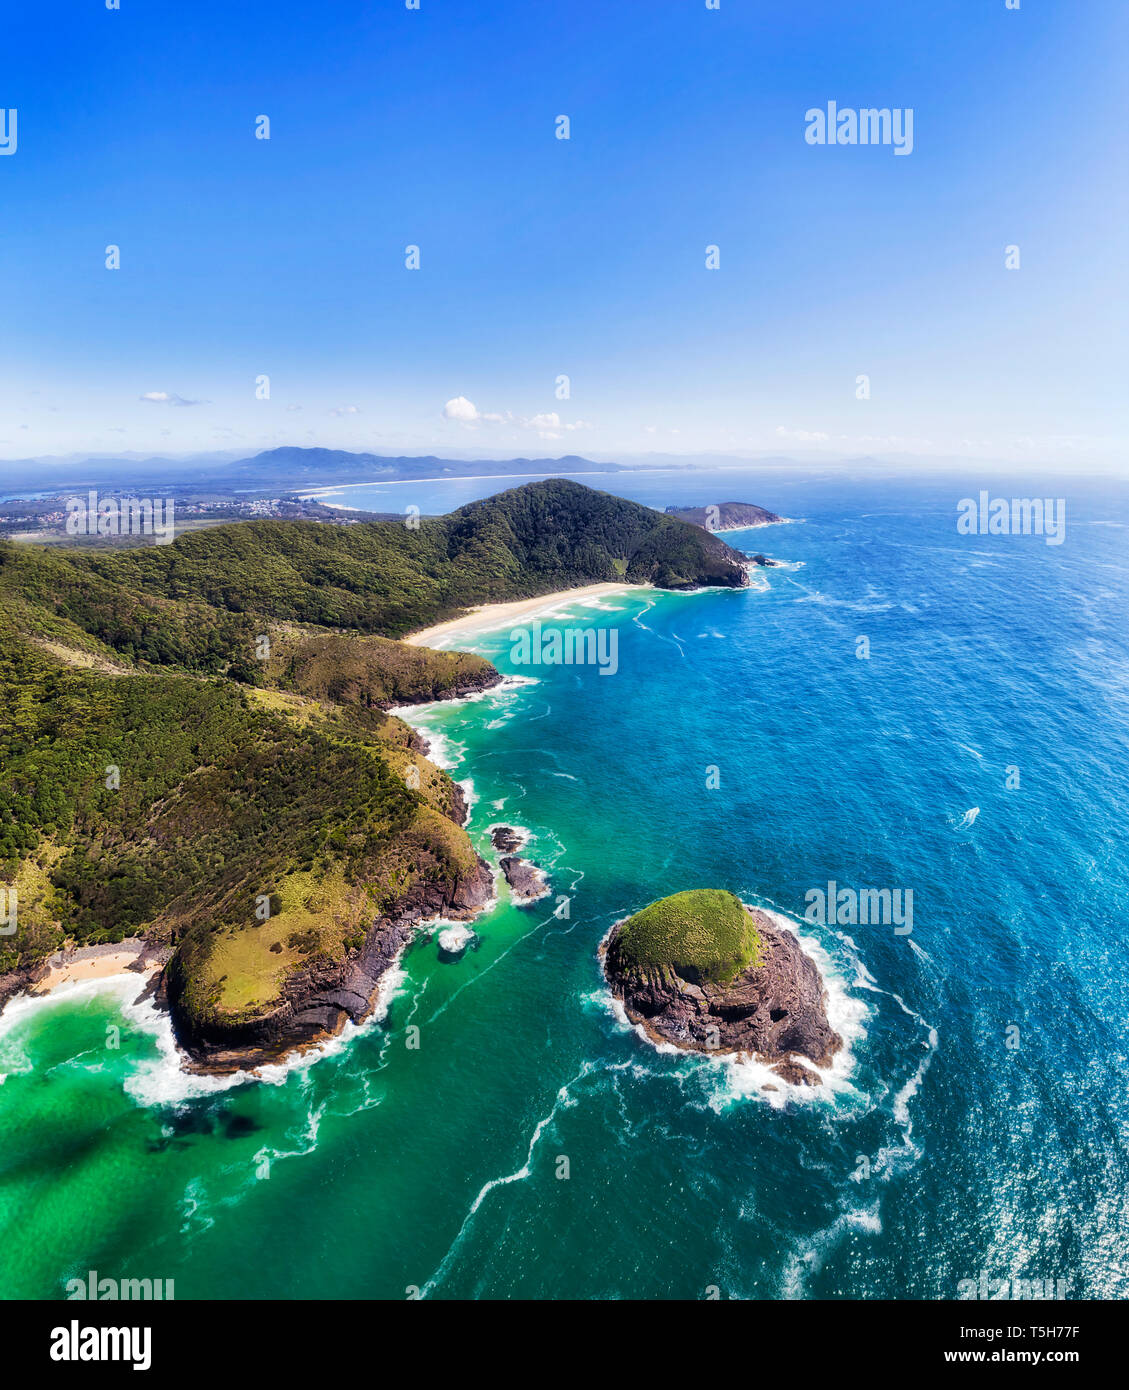 New Scenic 5 posti della costa Arakoon con appartate spiagge sabbiose e piccola vegetazione Rocks off shore nell'oceano Pacifico in verticale panorama dell'antenna. Foto Stock